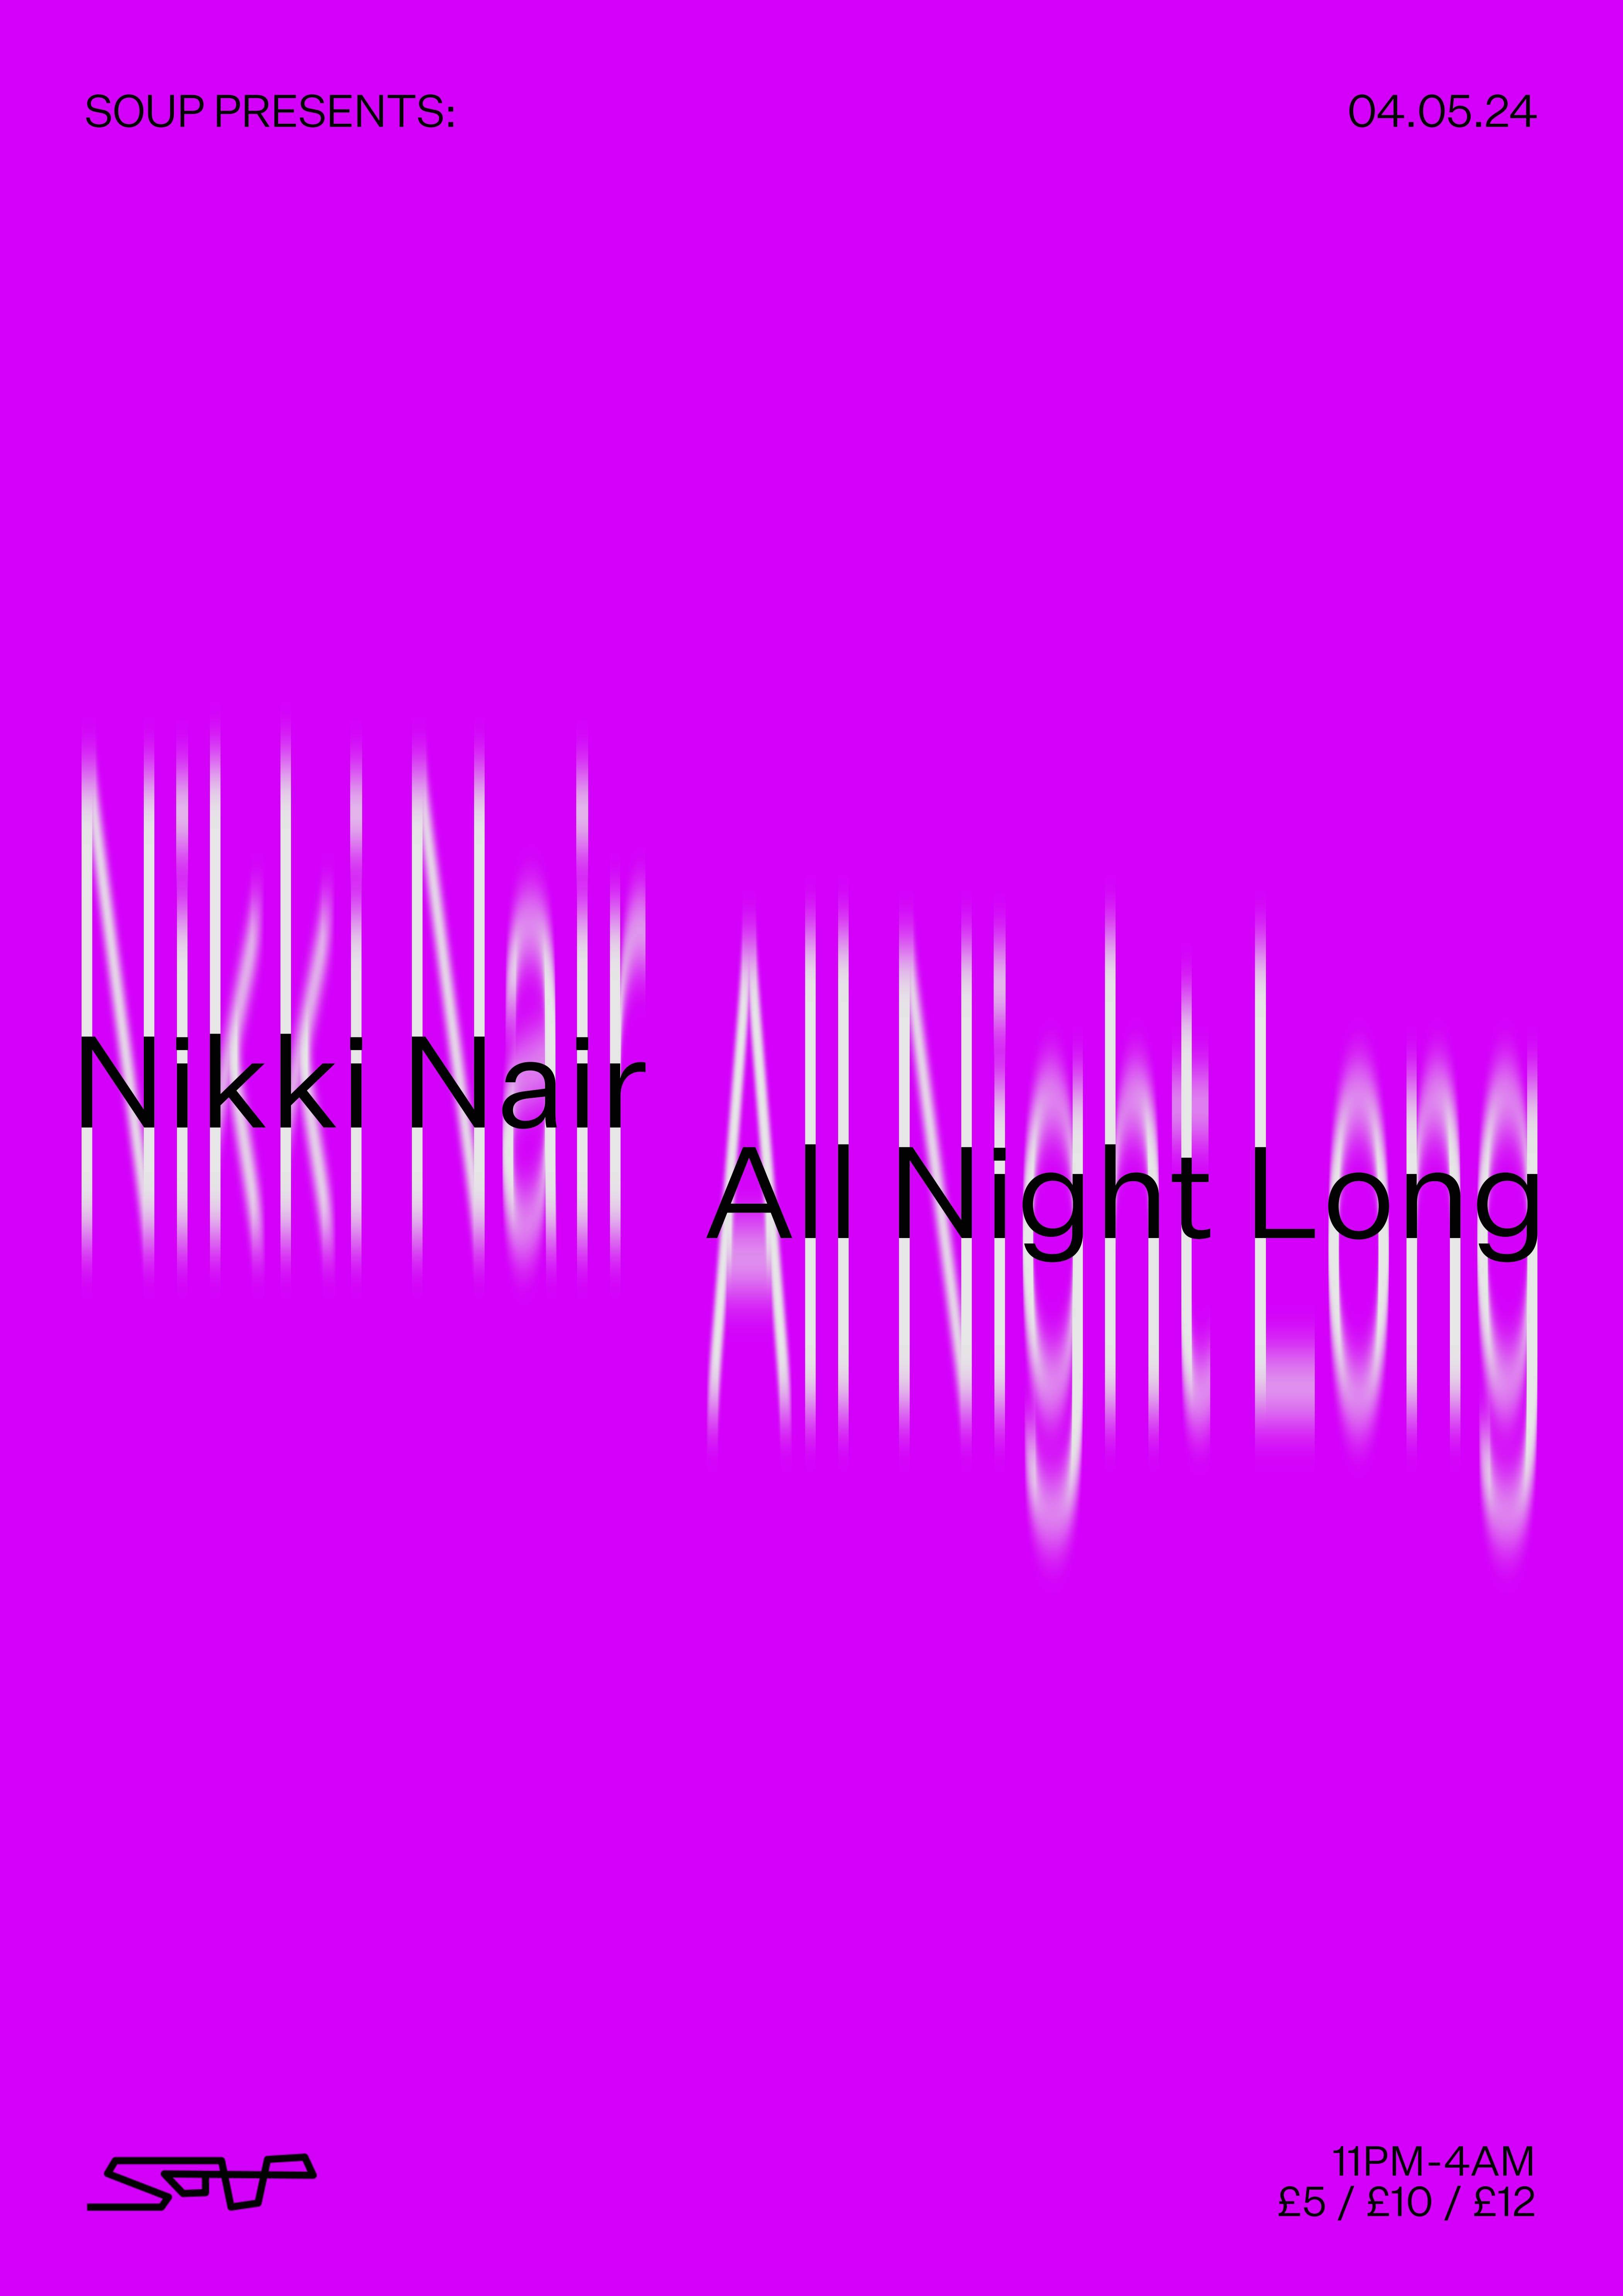 Soup presents: Nikki Nair (All Night Long) - Página trasera